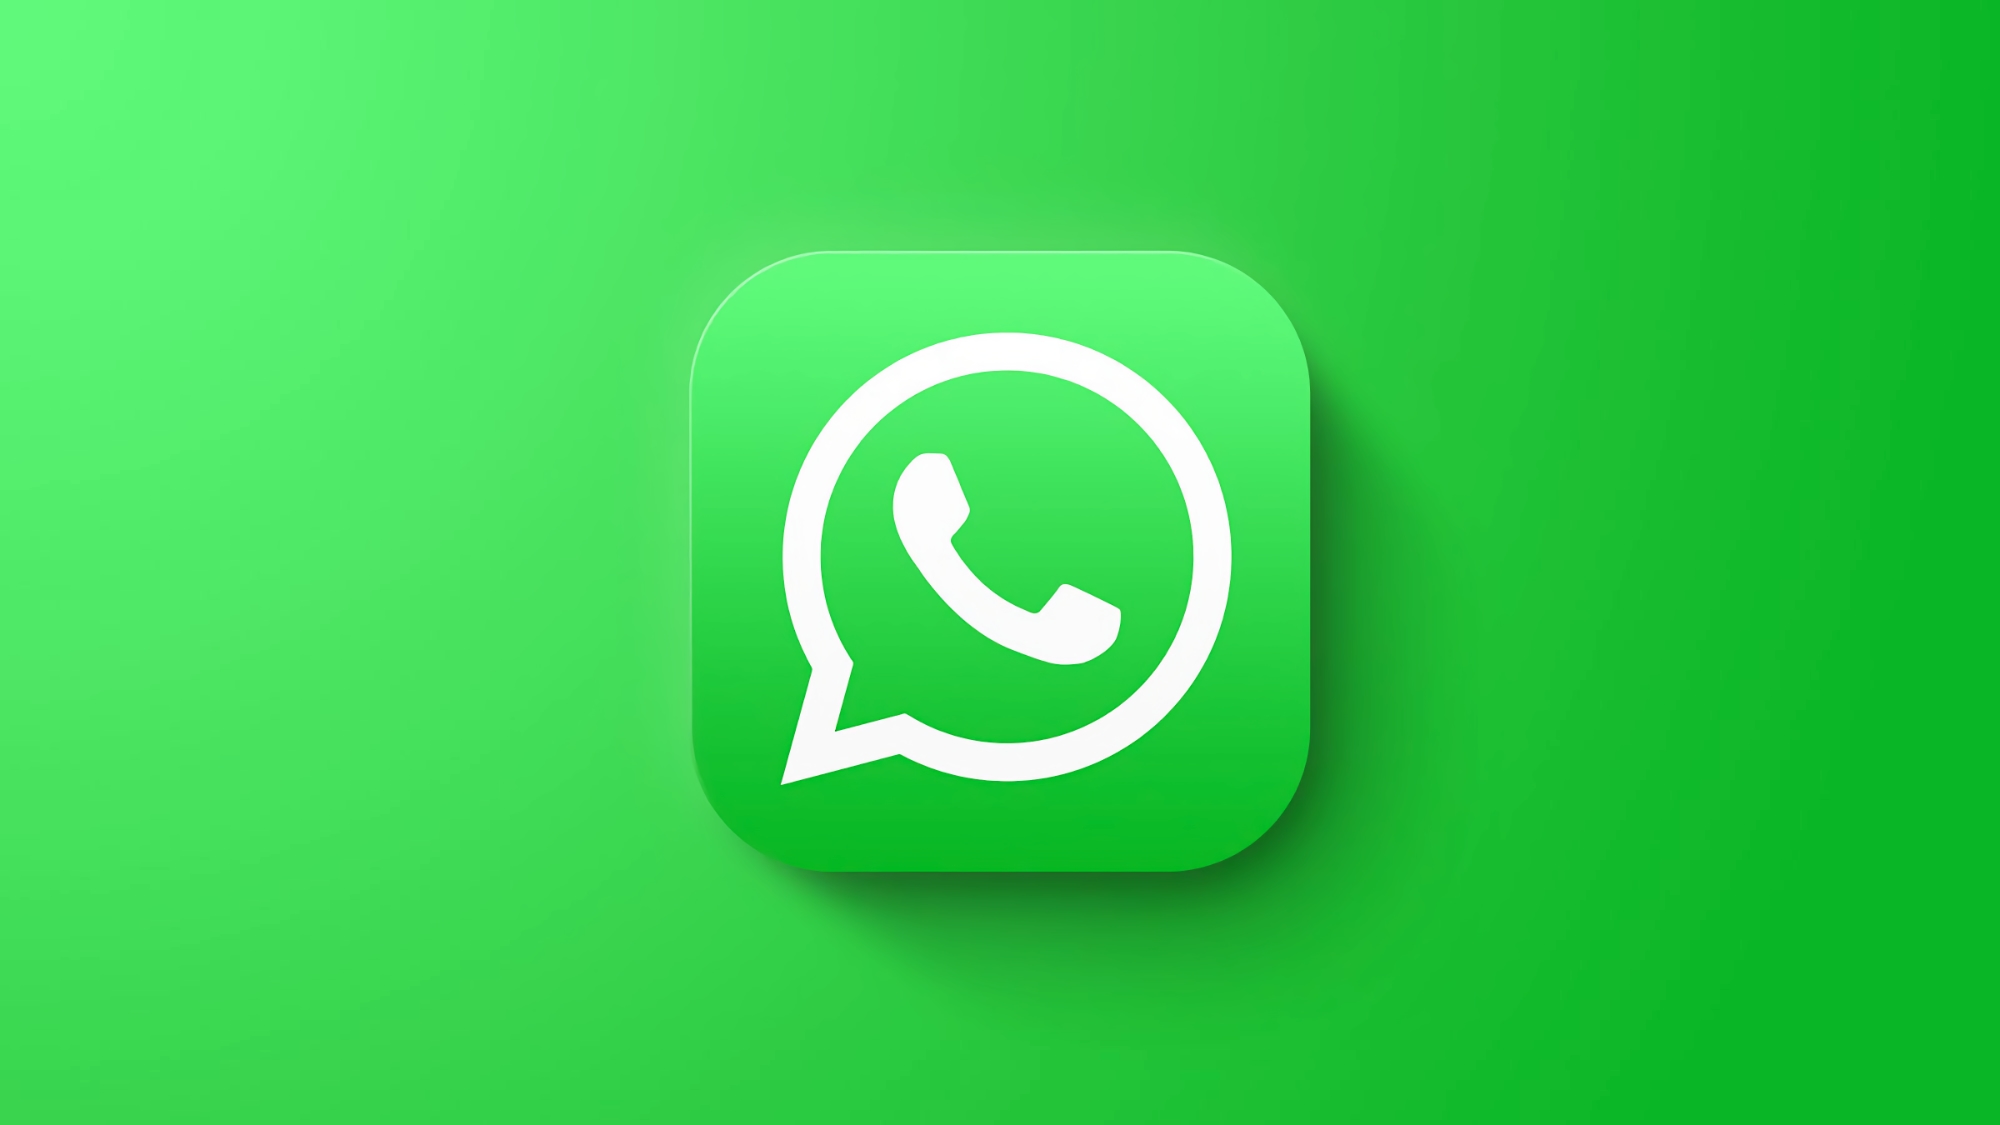 WhatsApp розробляє застосунок для Mac з нативною підтримкою Apple Silicon